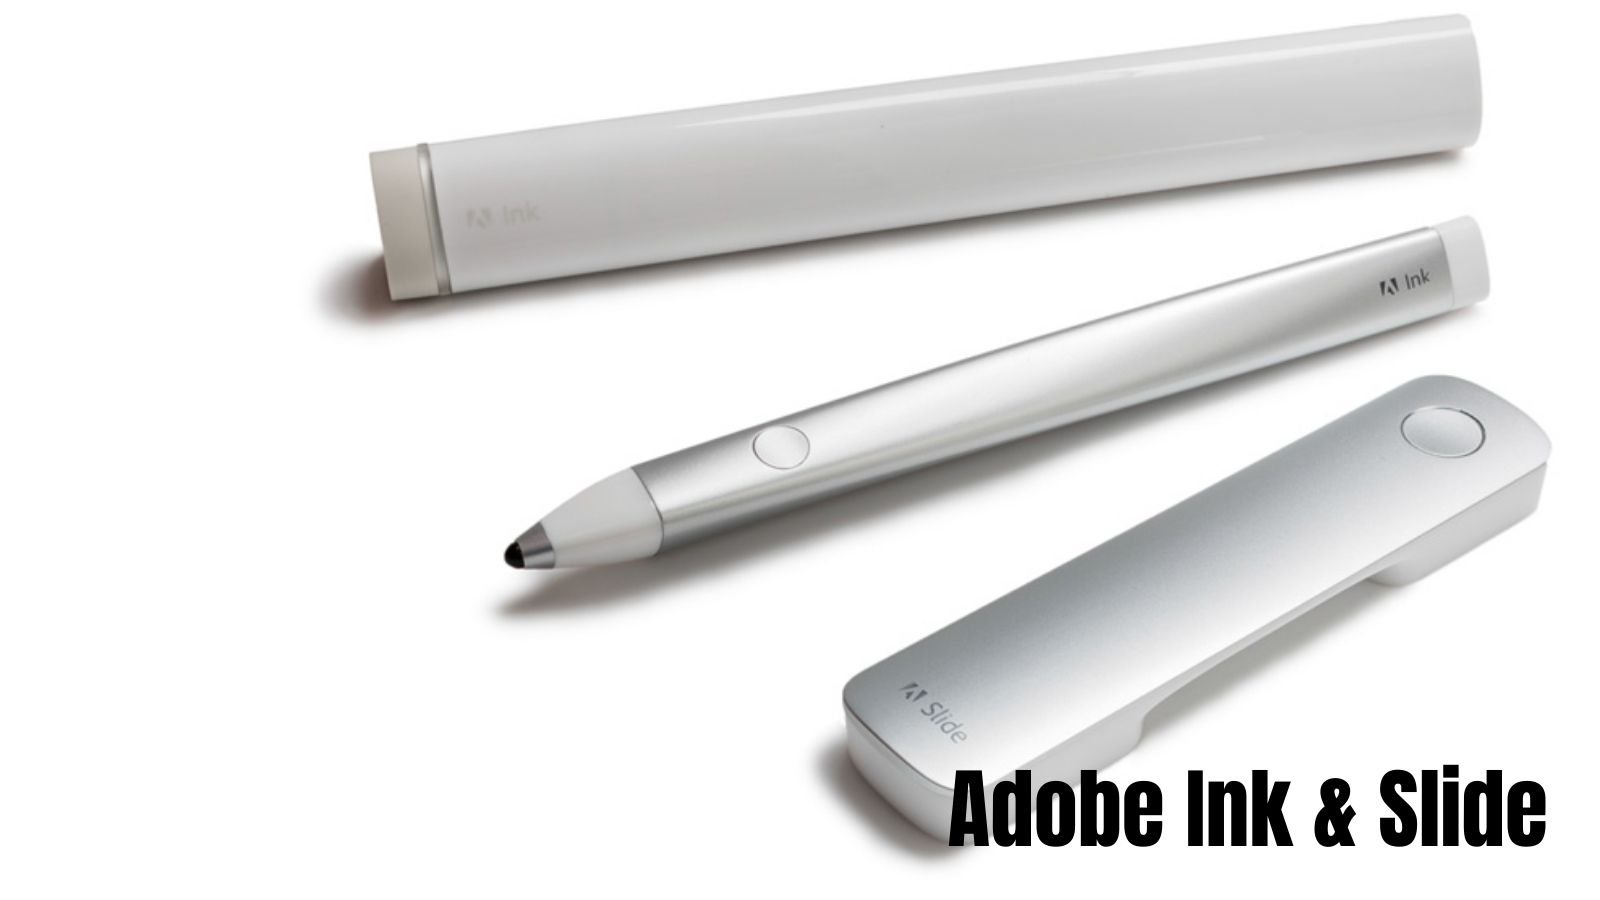 Adobe Ink & Slide